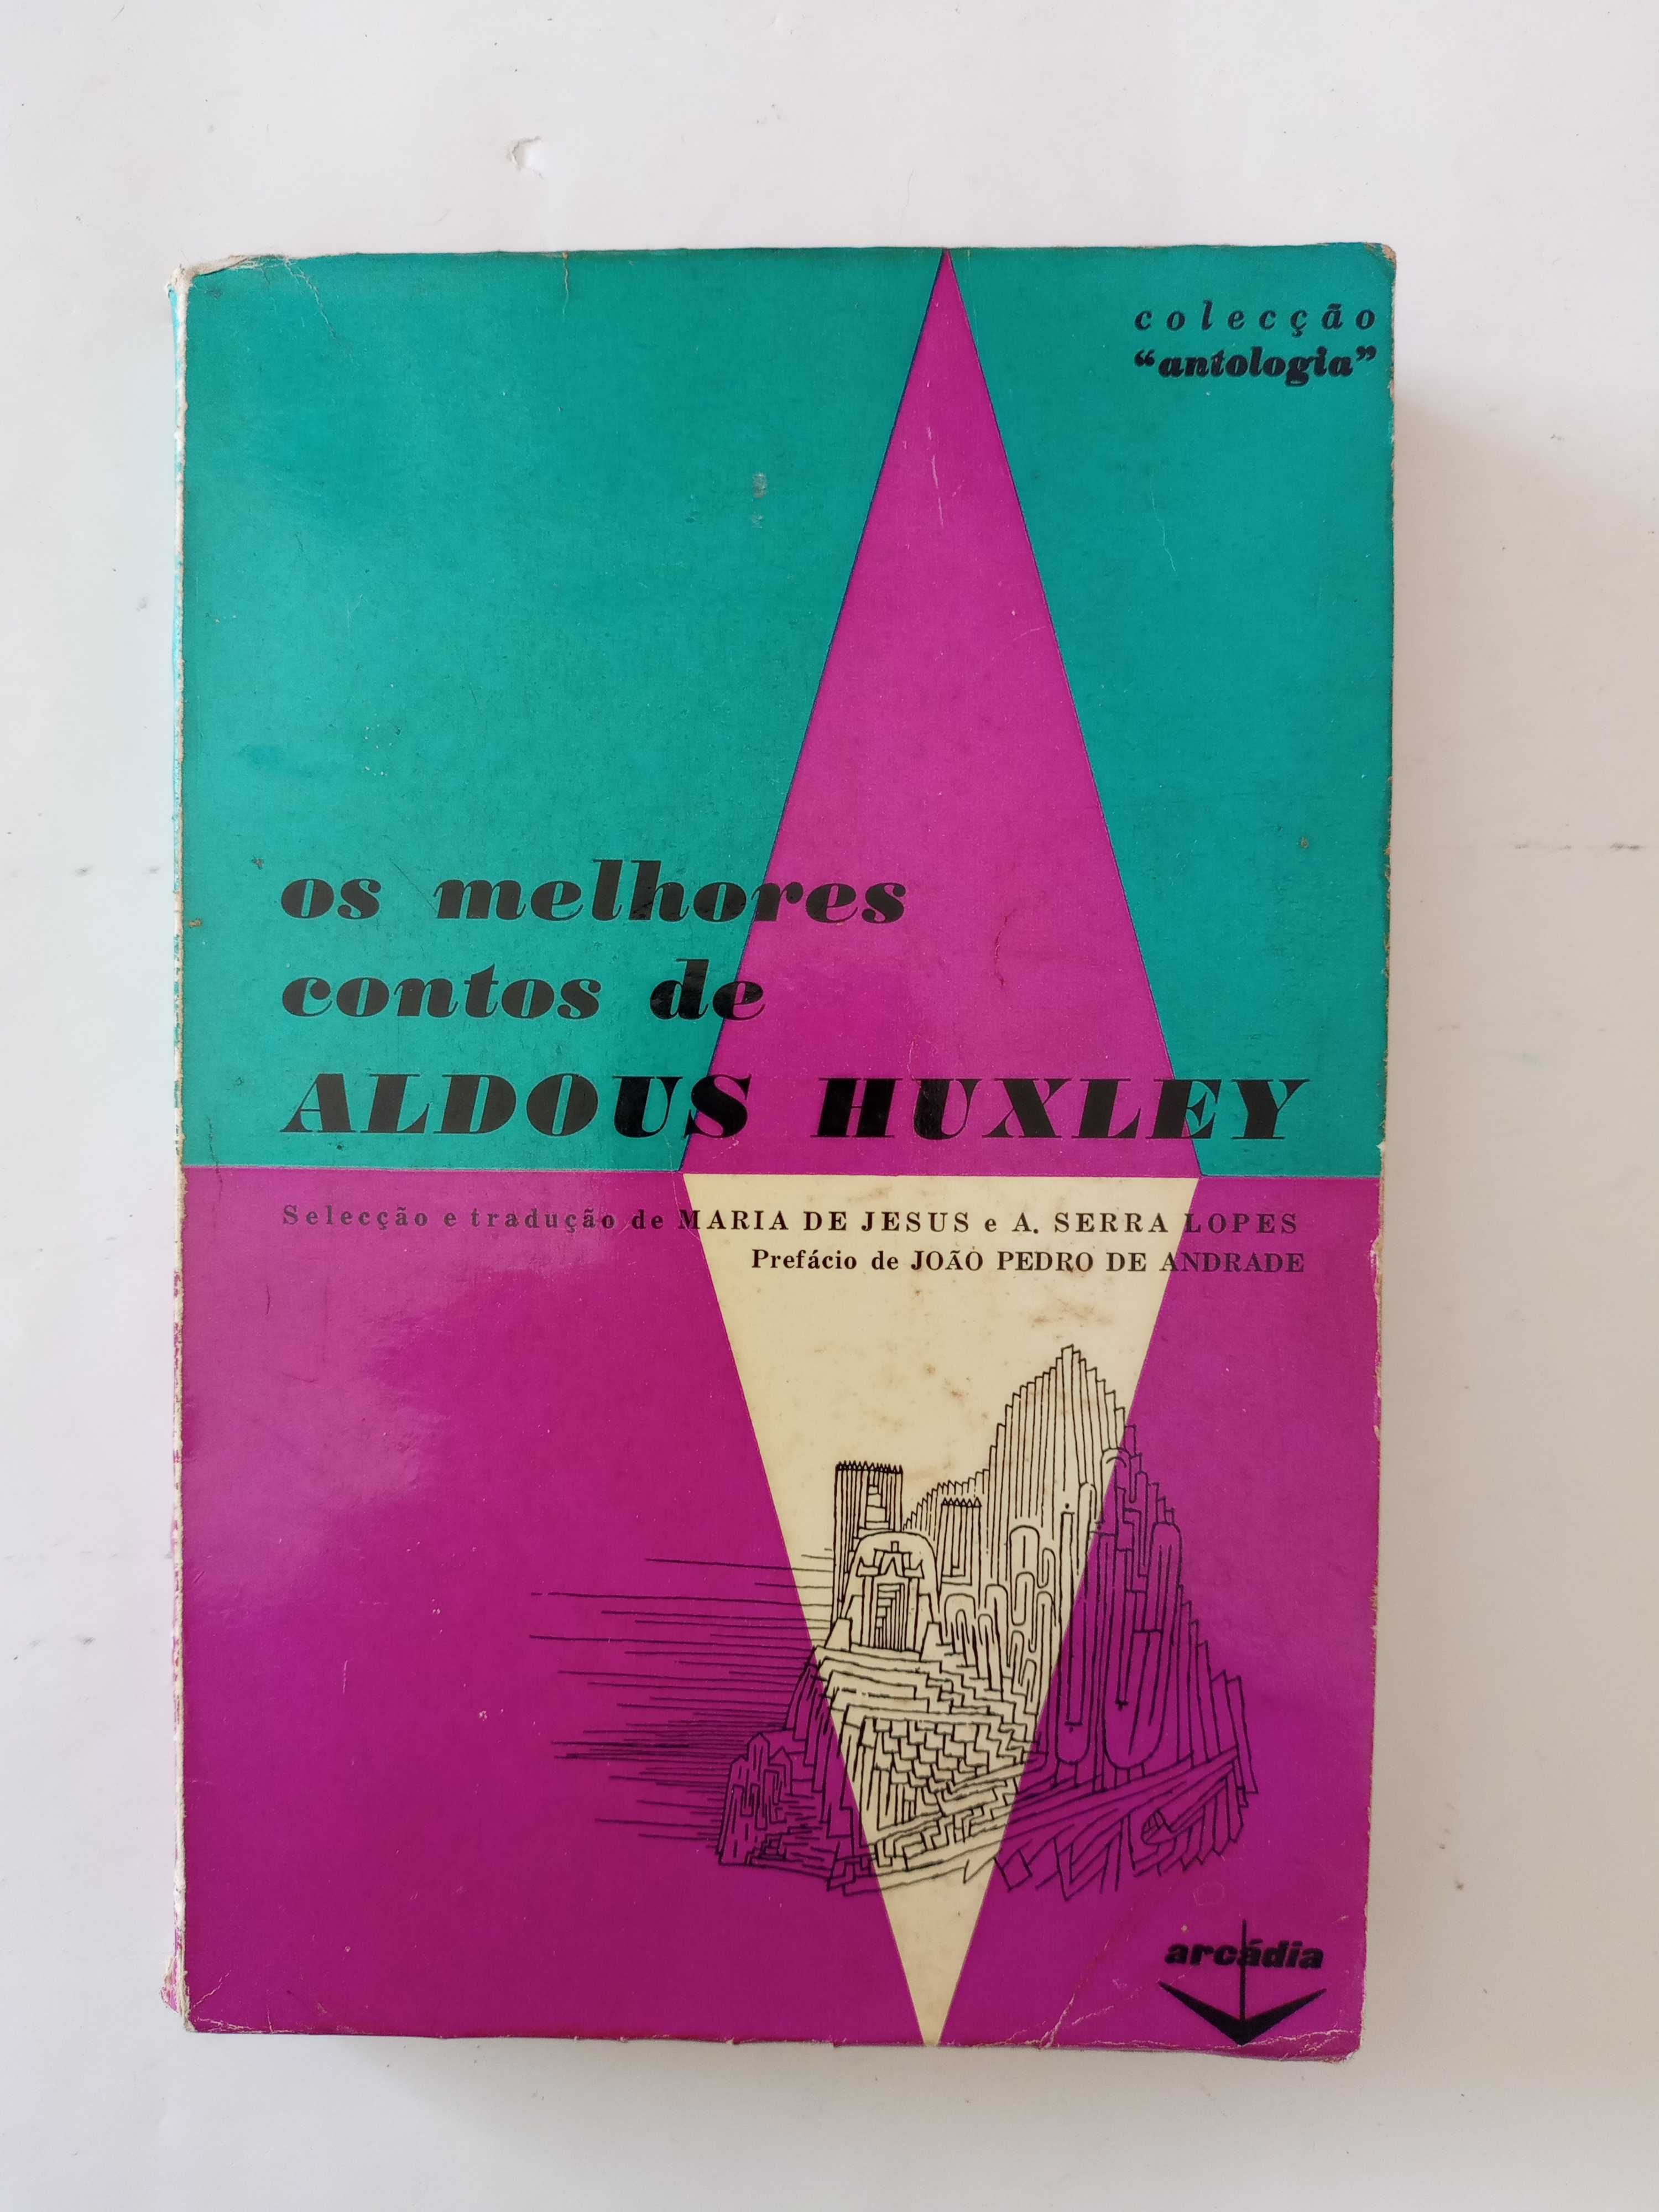 Os Melhores Contos de Haldous Huxley